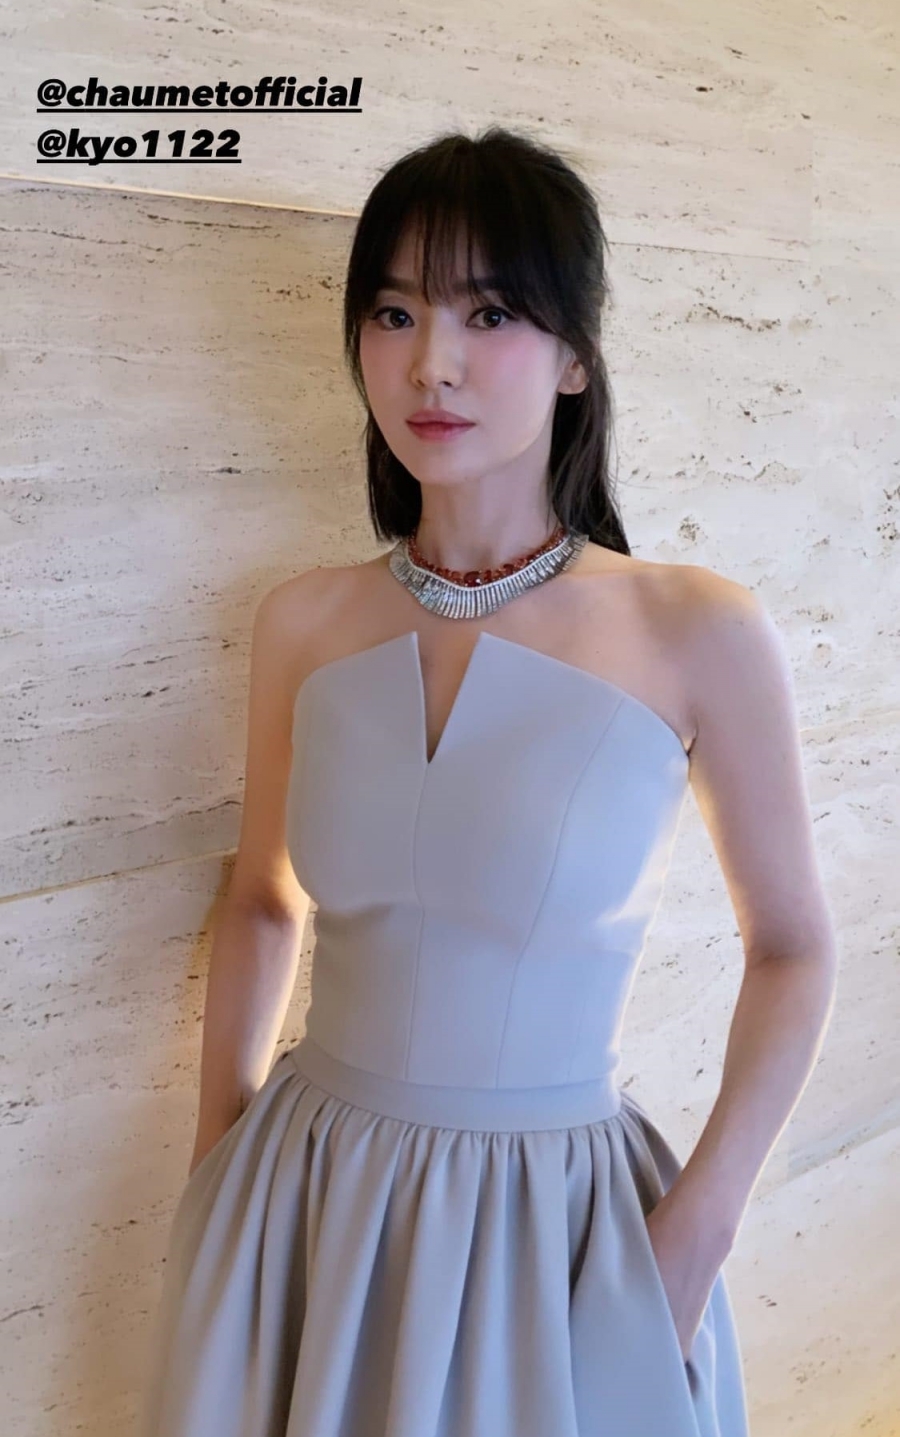 Song Hye Kyo trông như nữ sinh với mái bằng, cam thường vẫn đẹp xuất sắc - Ảnh 3